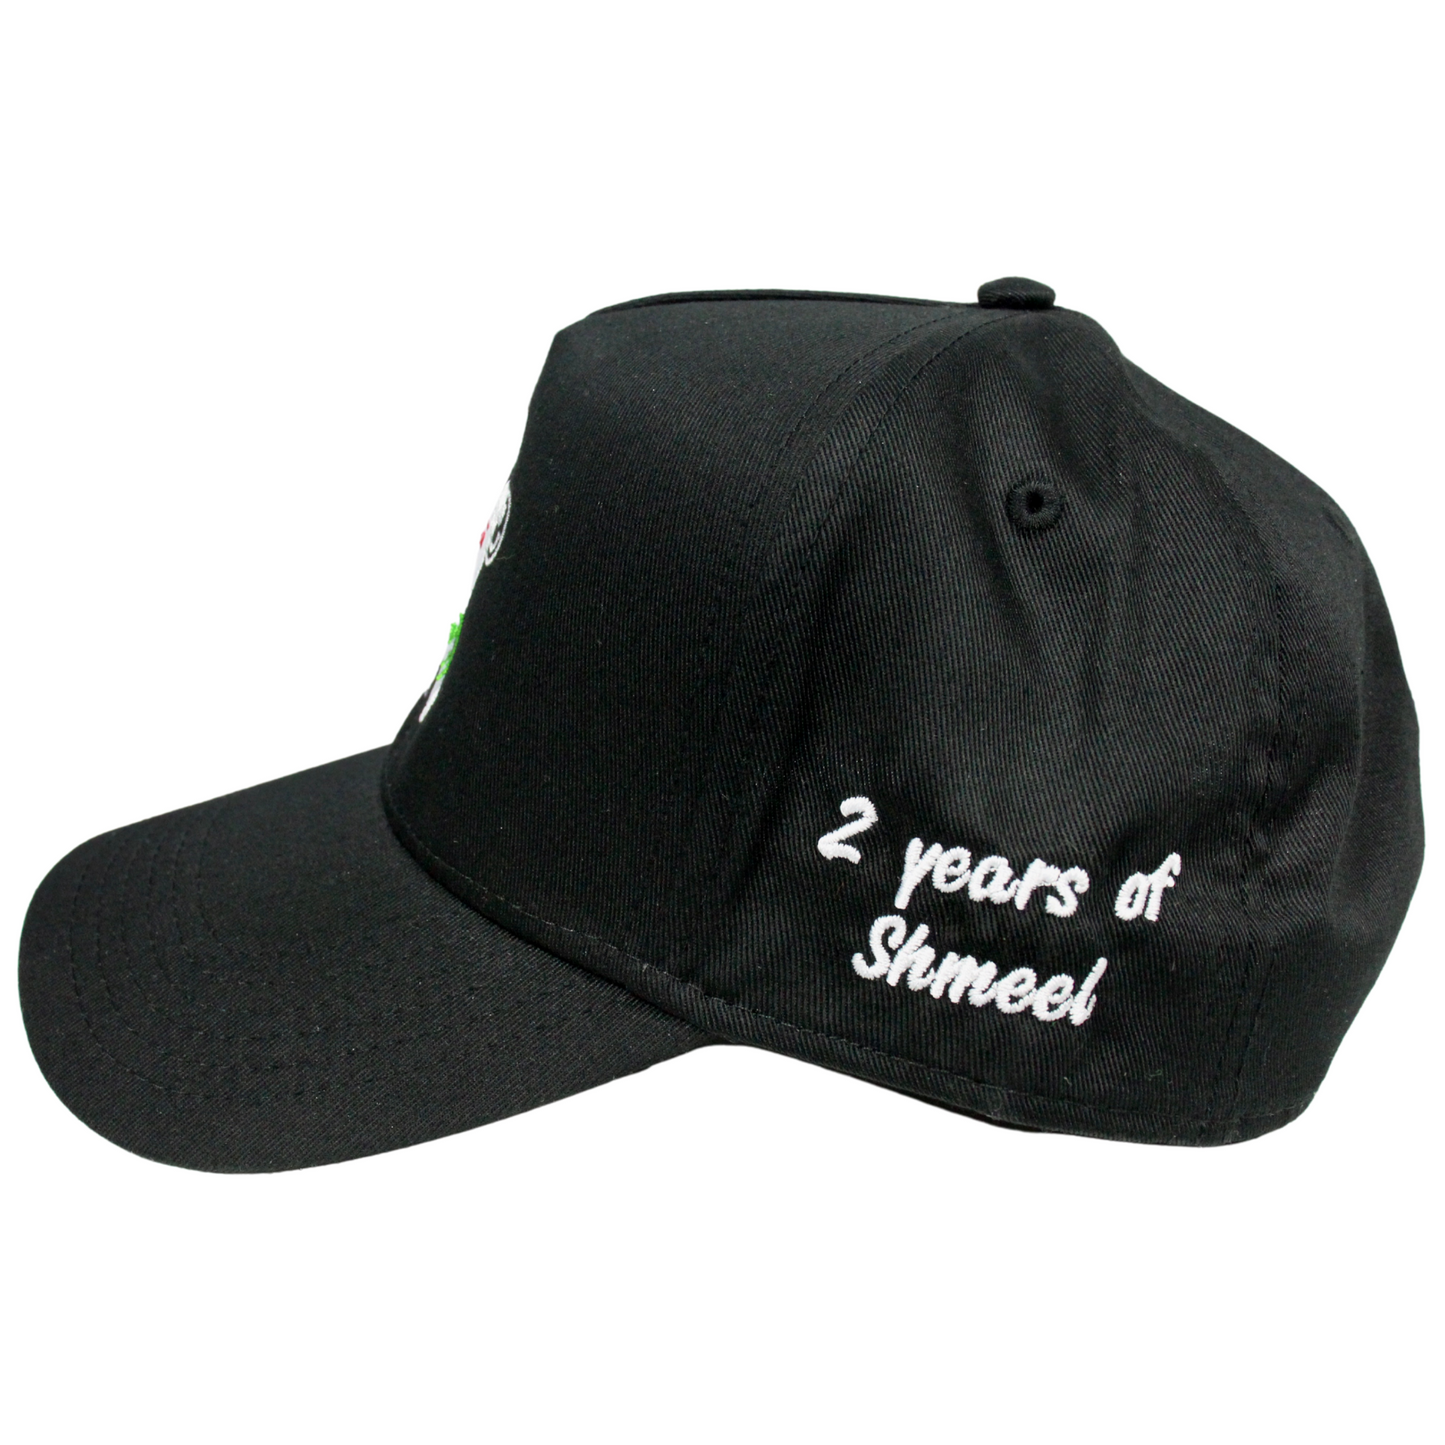 Shmeel NYC 2 Year Anniversary NY Logo Hat (Black)